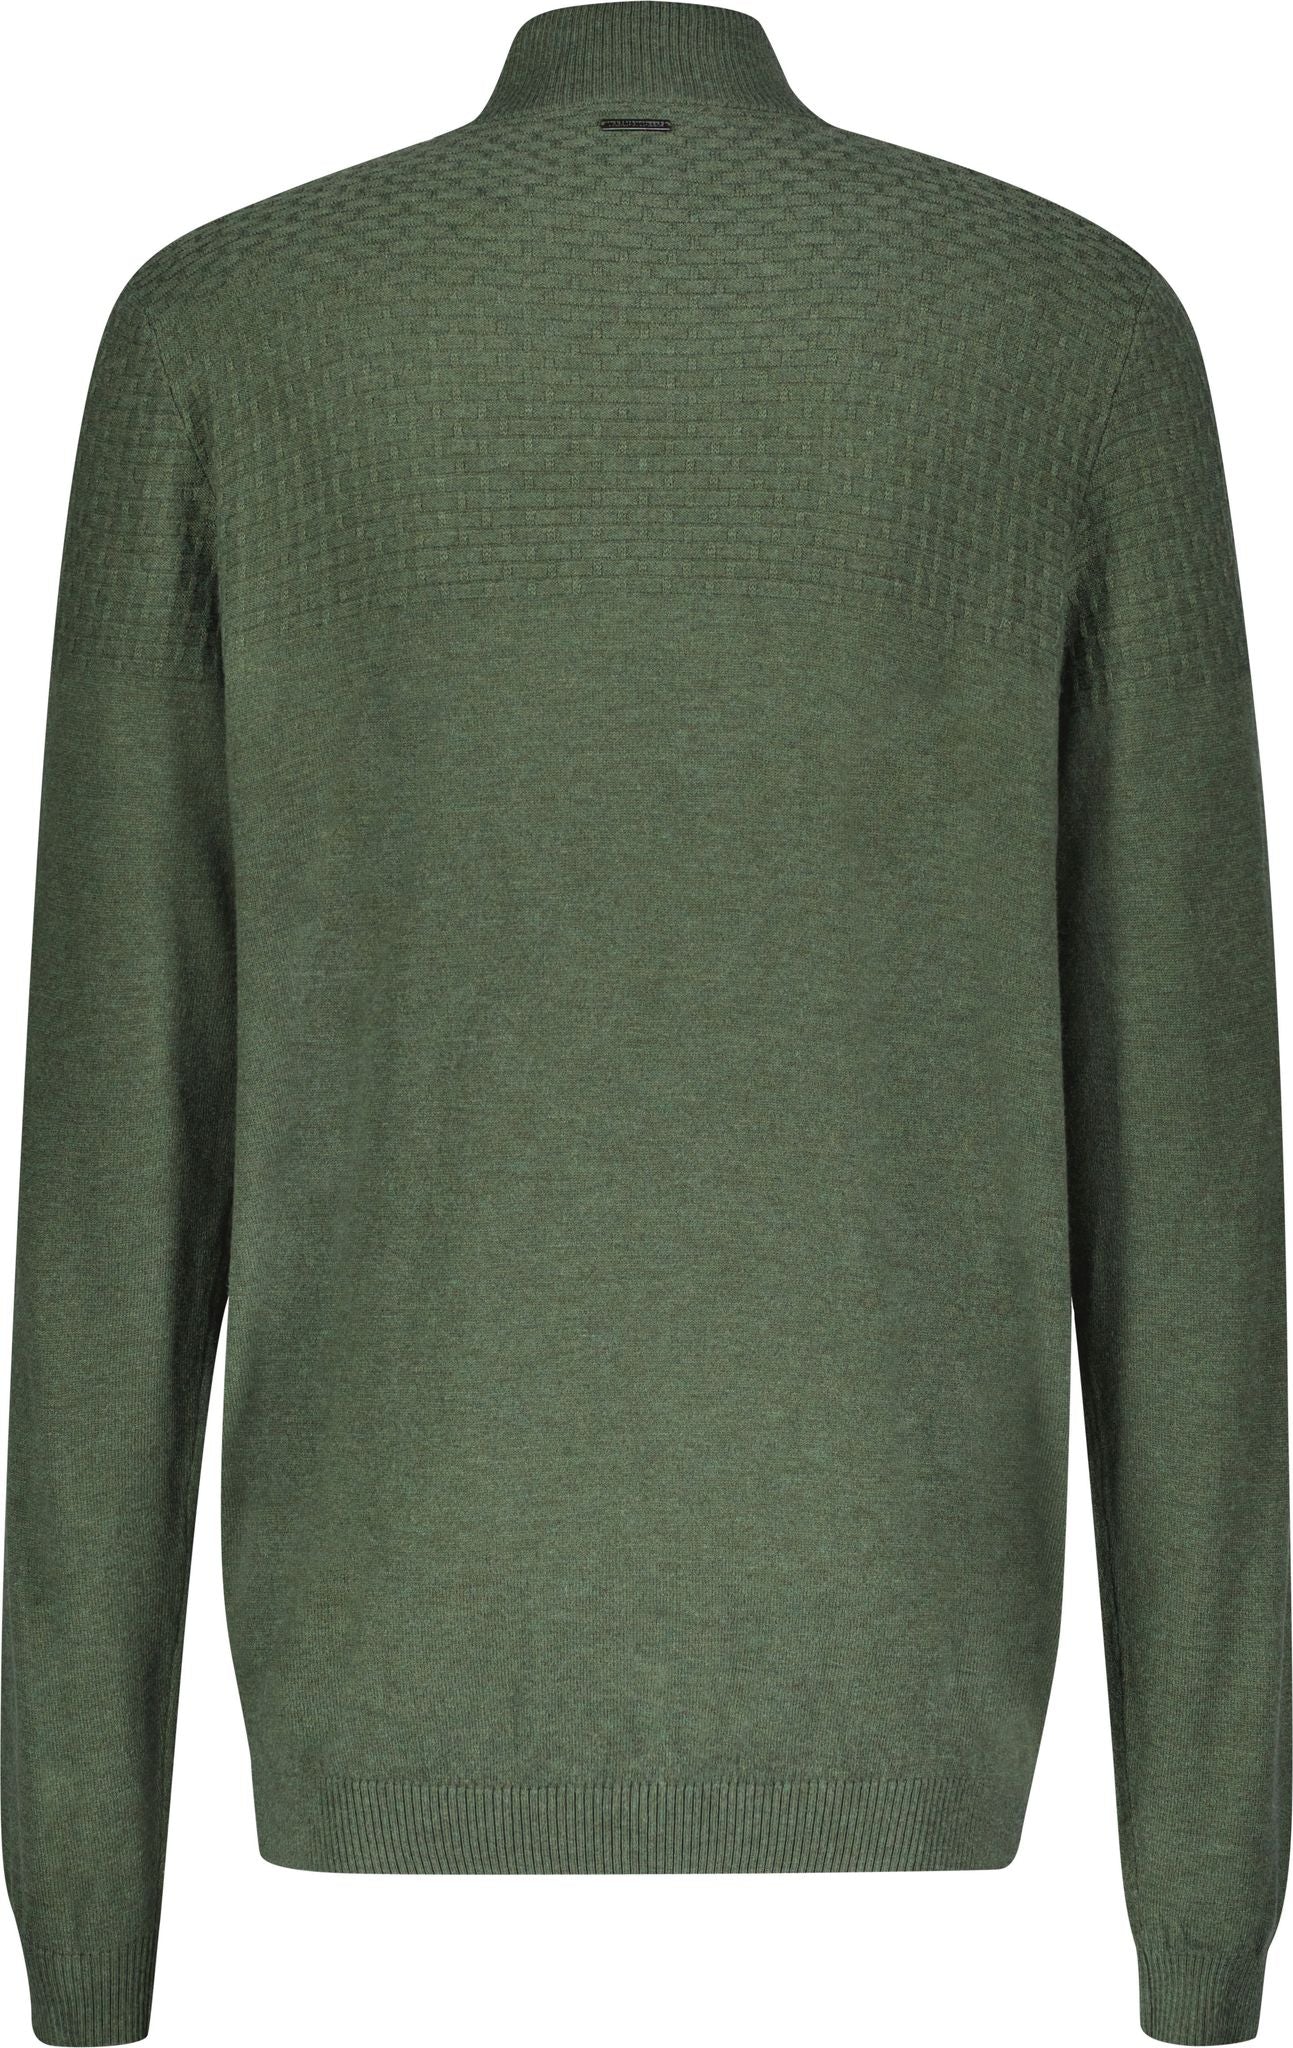 Halvsten Sweater - Olive Melange